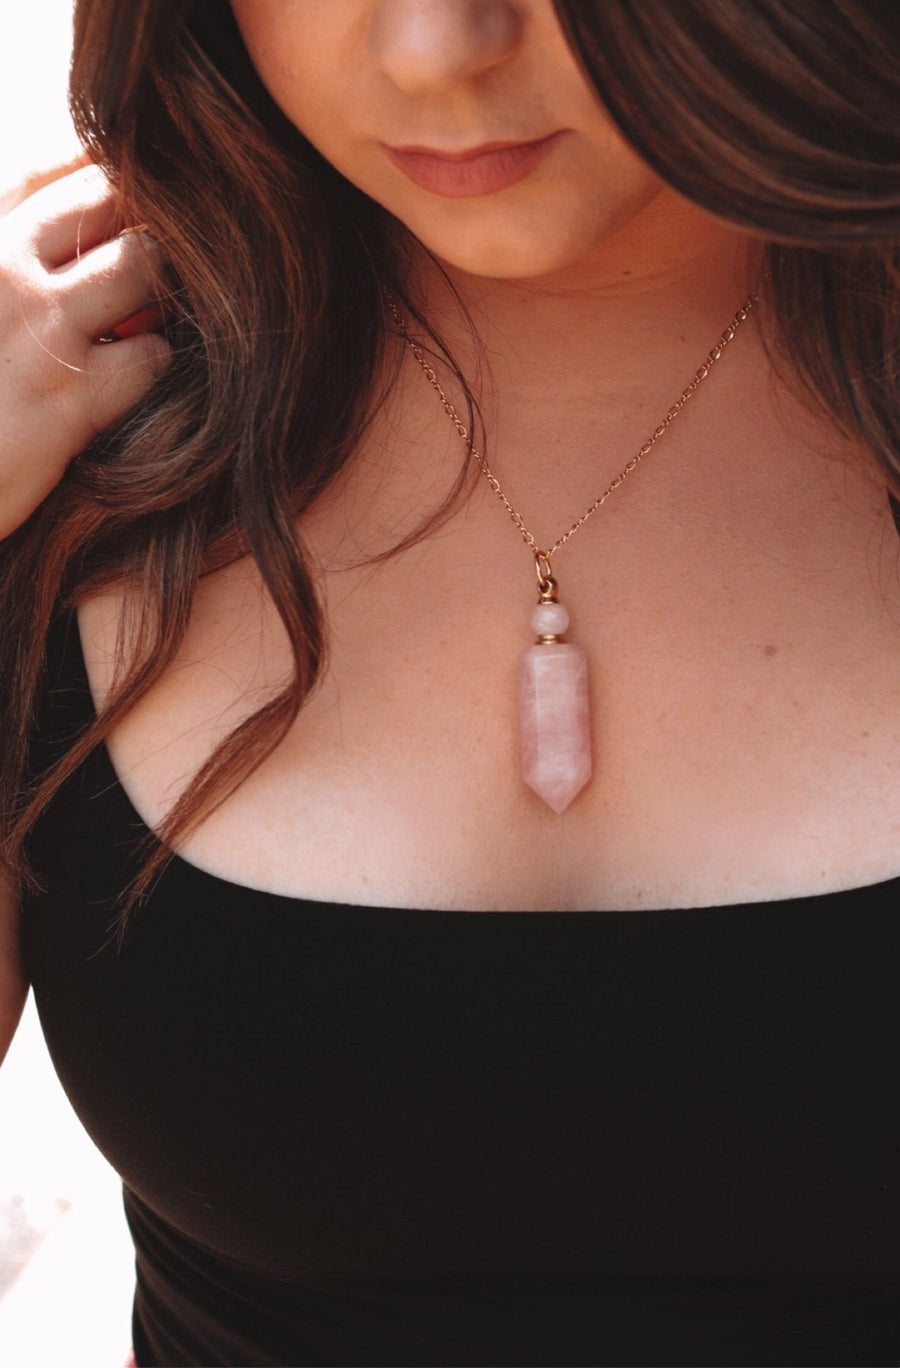 Potion bottle necklace | rose quartz